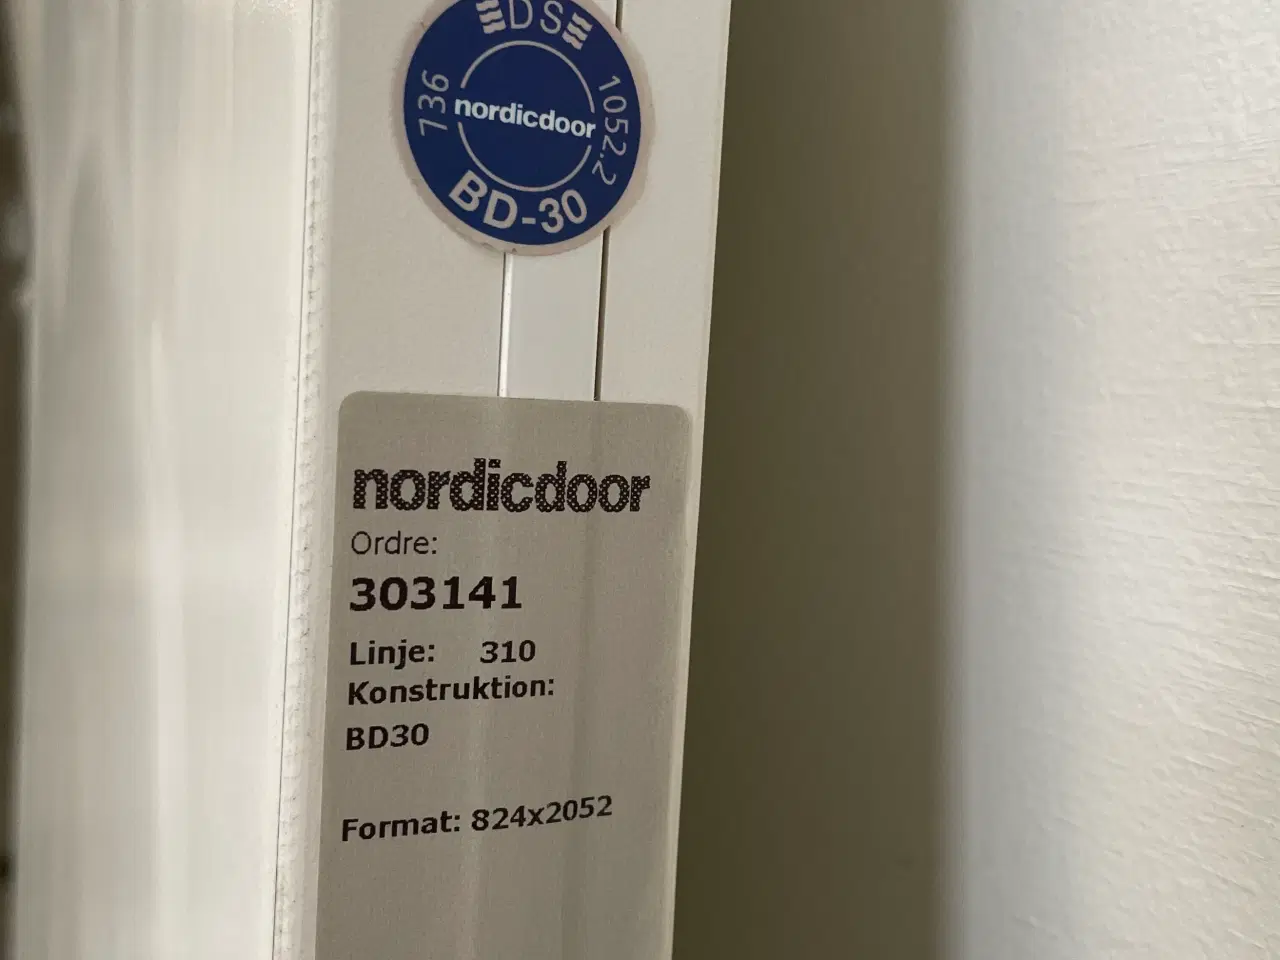 Billede 4 - Nordicdoor branddør bd30, 824x40x2052mm, højrehængt, hvid